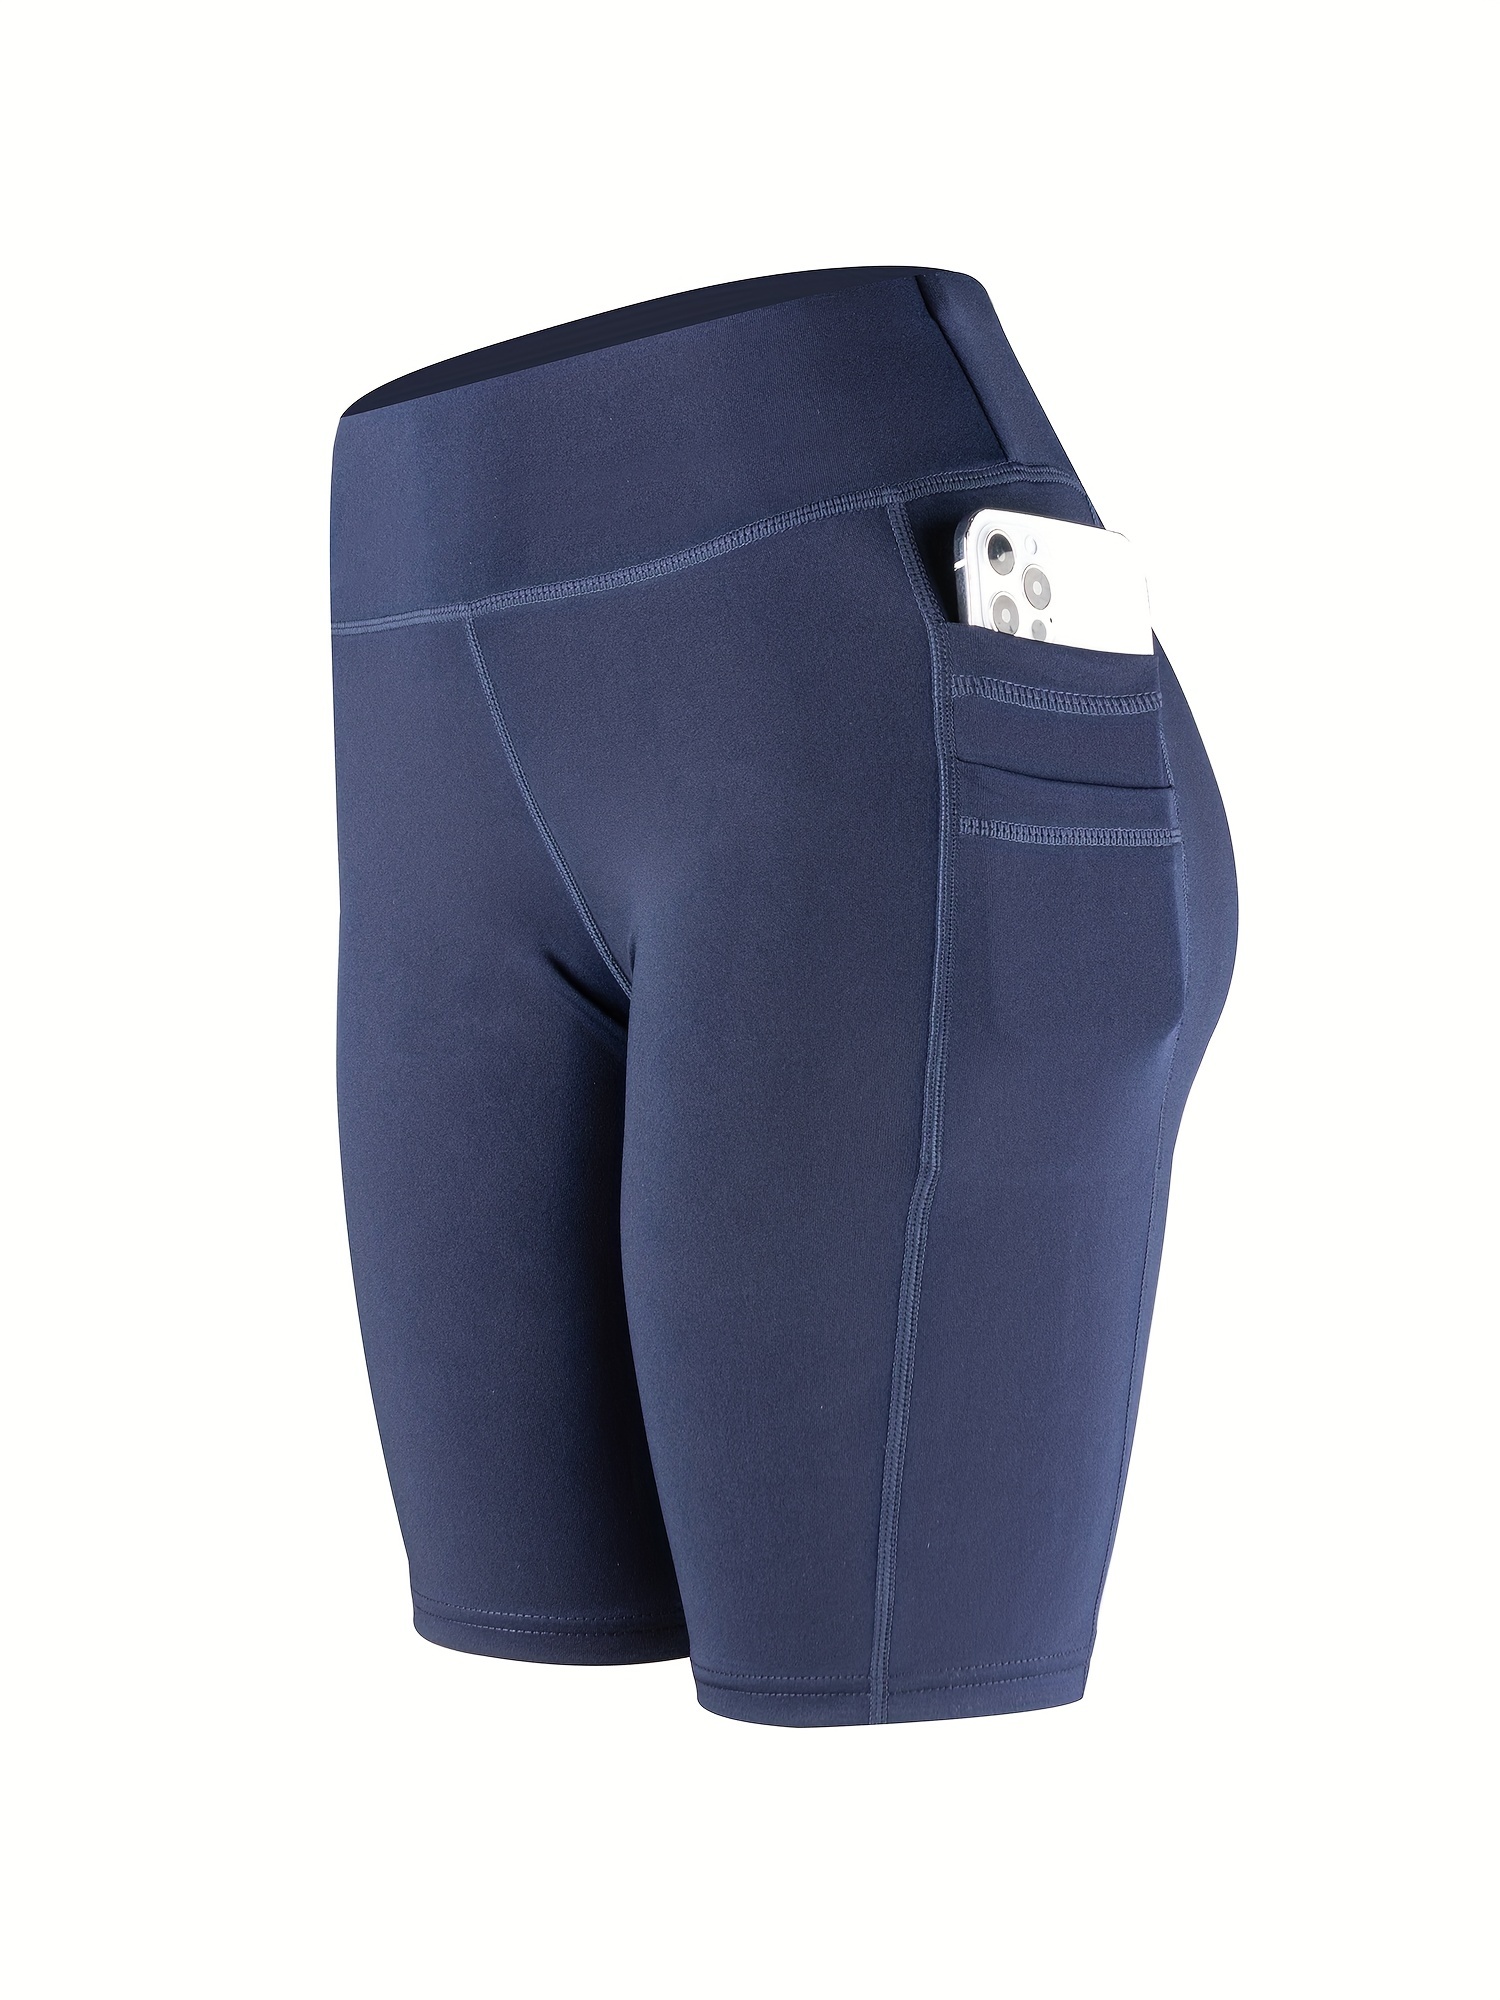 Pantalones cortos deportivos para mujer con bolsillos Pantalones